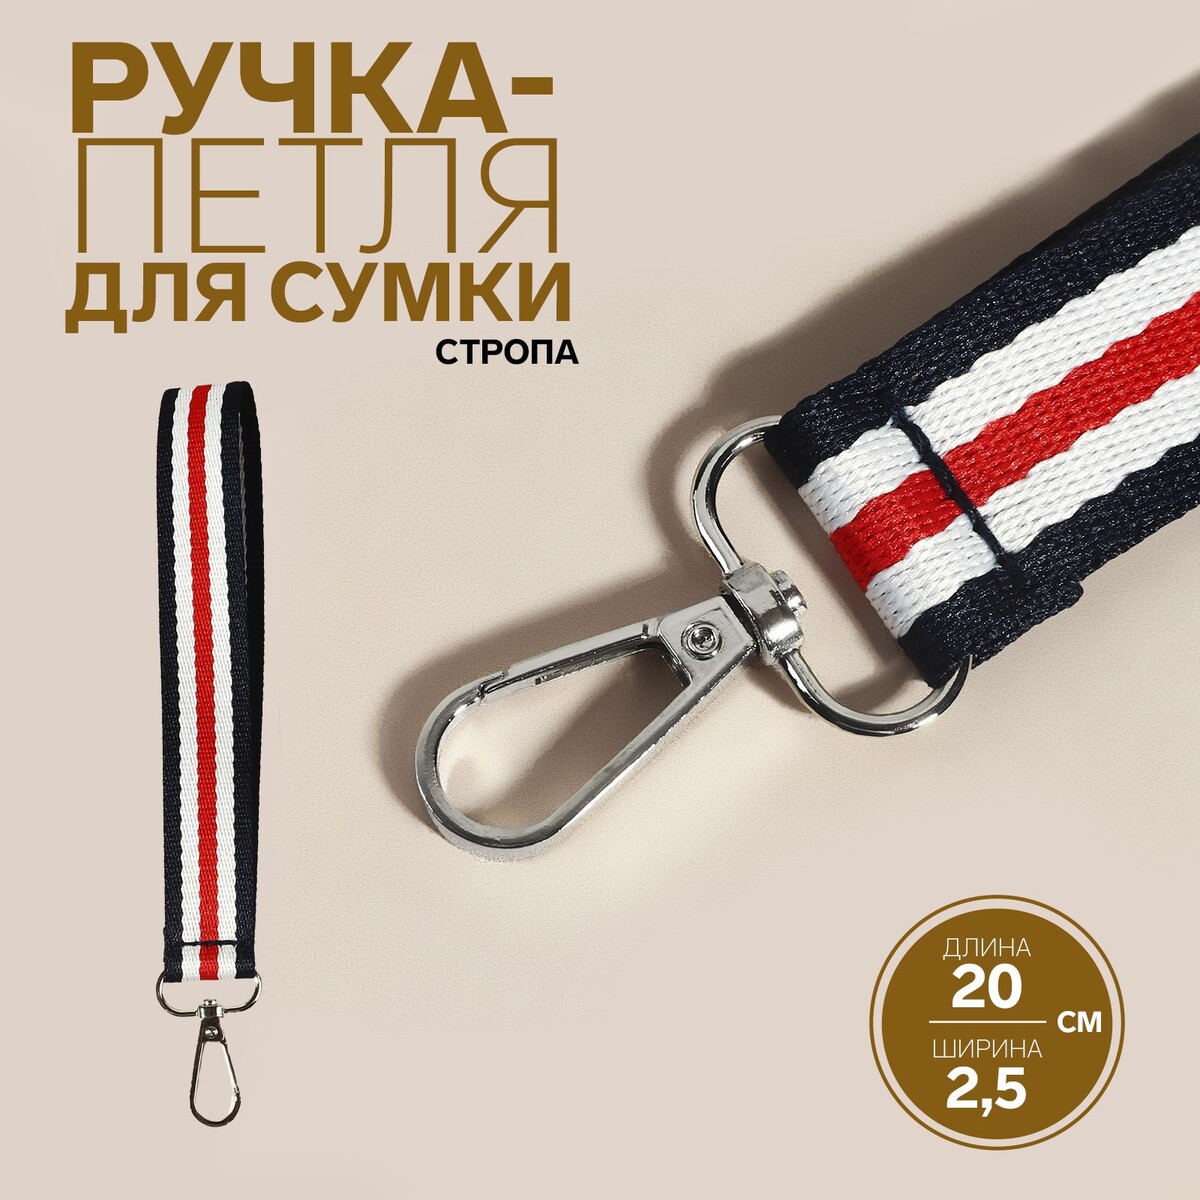 Ручка-петля для сумки, стропа, 20 × 2,5 см, цвет синий/белый/красный ручка панорама грозный цв красный